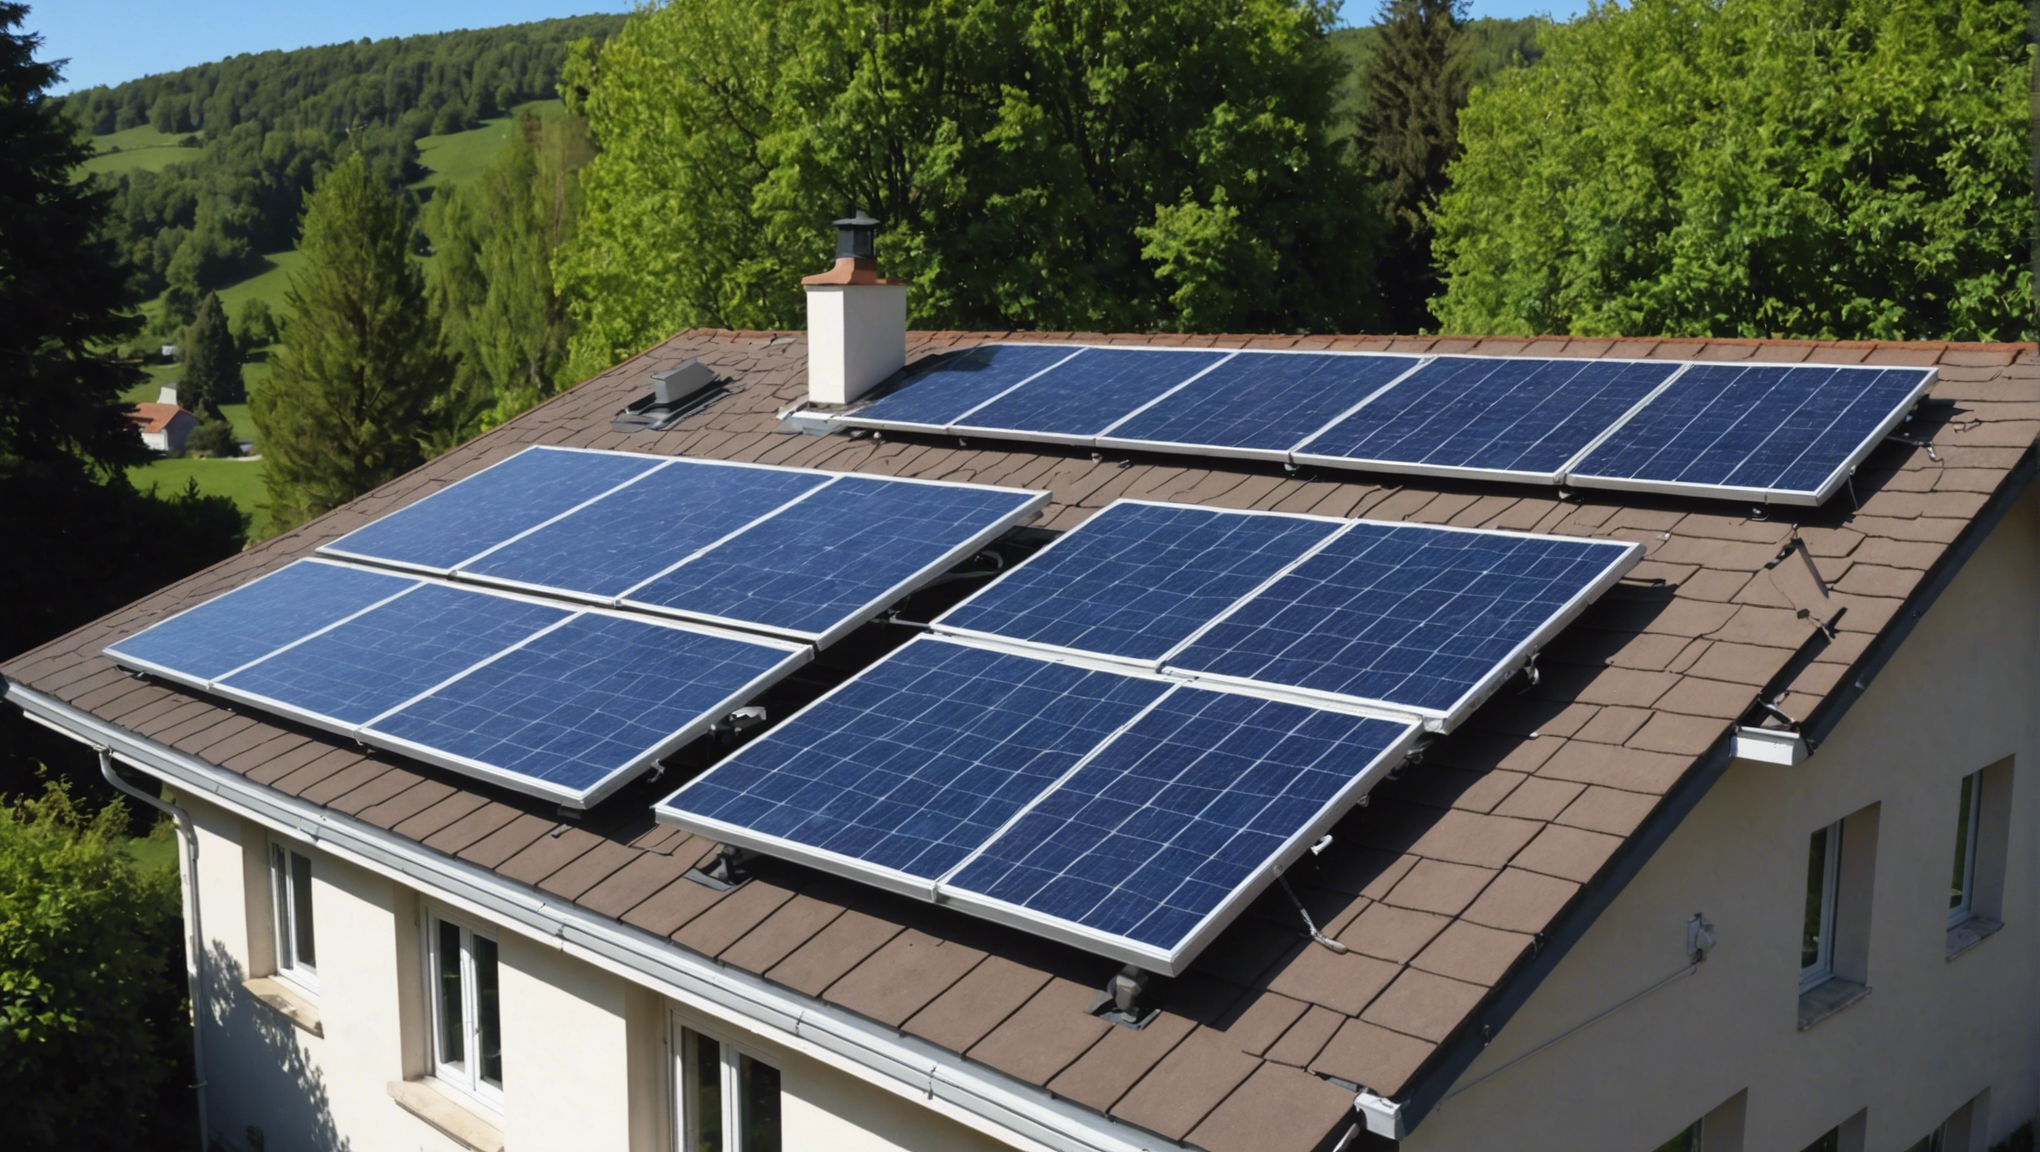 découvrez toutes les étapes et les formations nécessaires pour devenir installateur de panneaux solaires et entrez dans le secteur en pleine expansion de l'énergie renouvelable.